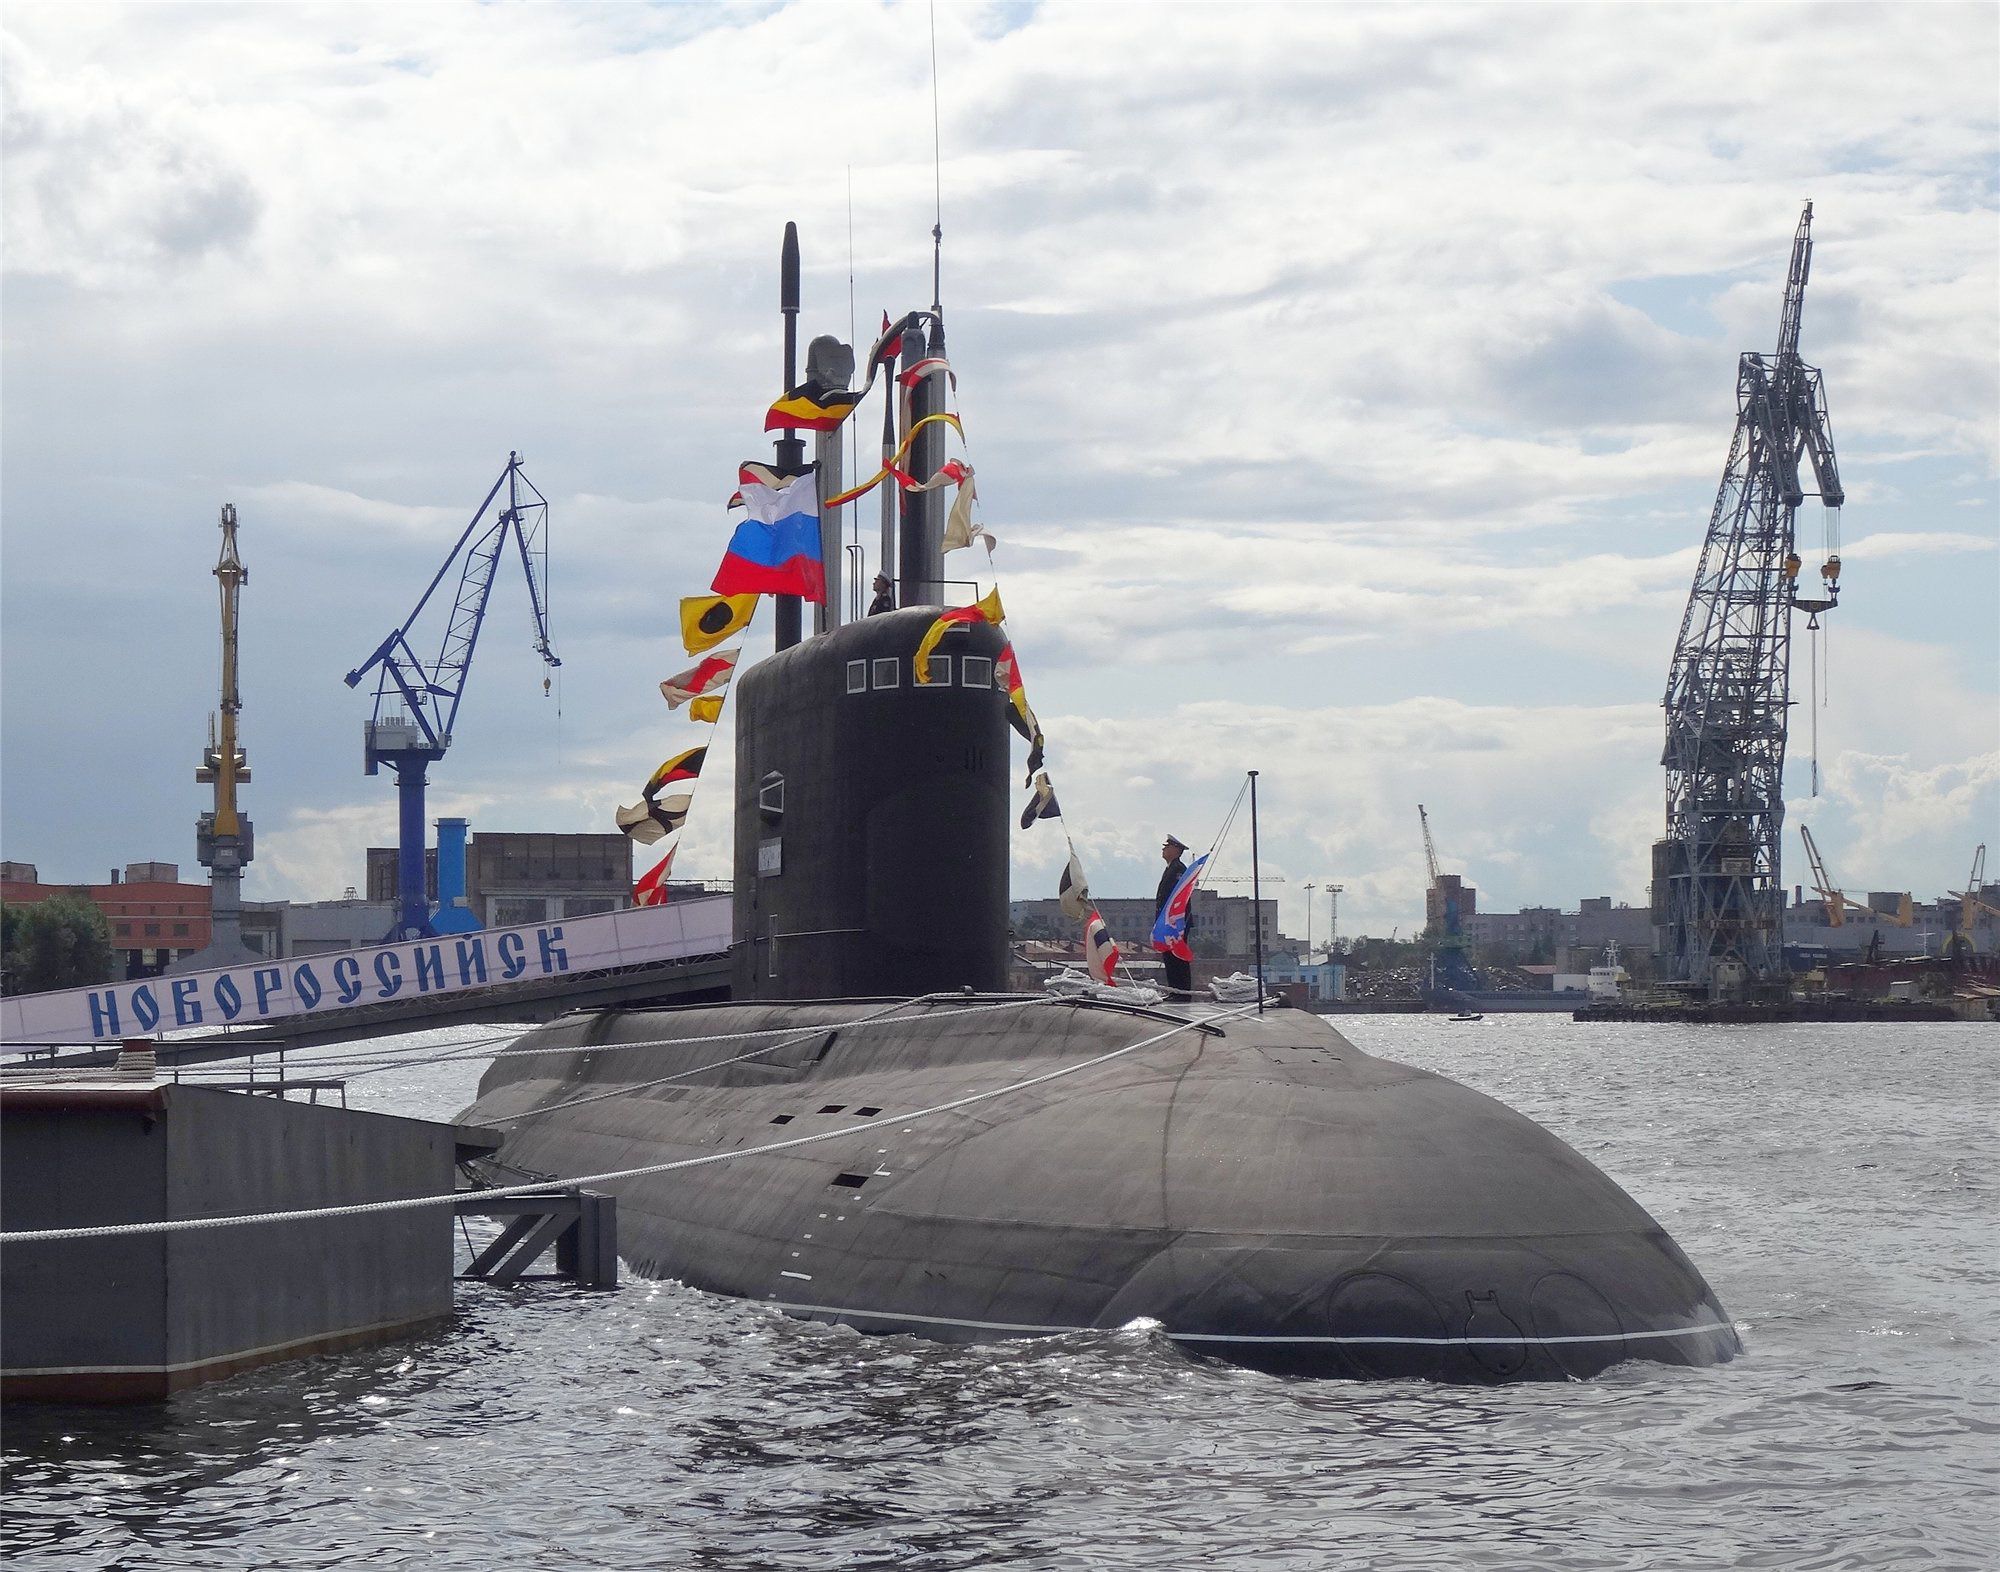  Конфлікт двох членів НАТО через російську субмарину- ЗМІ. "Новоросійськ" є одним з найбільш тихохідних дизельних підводних човнів у світі